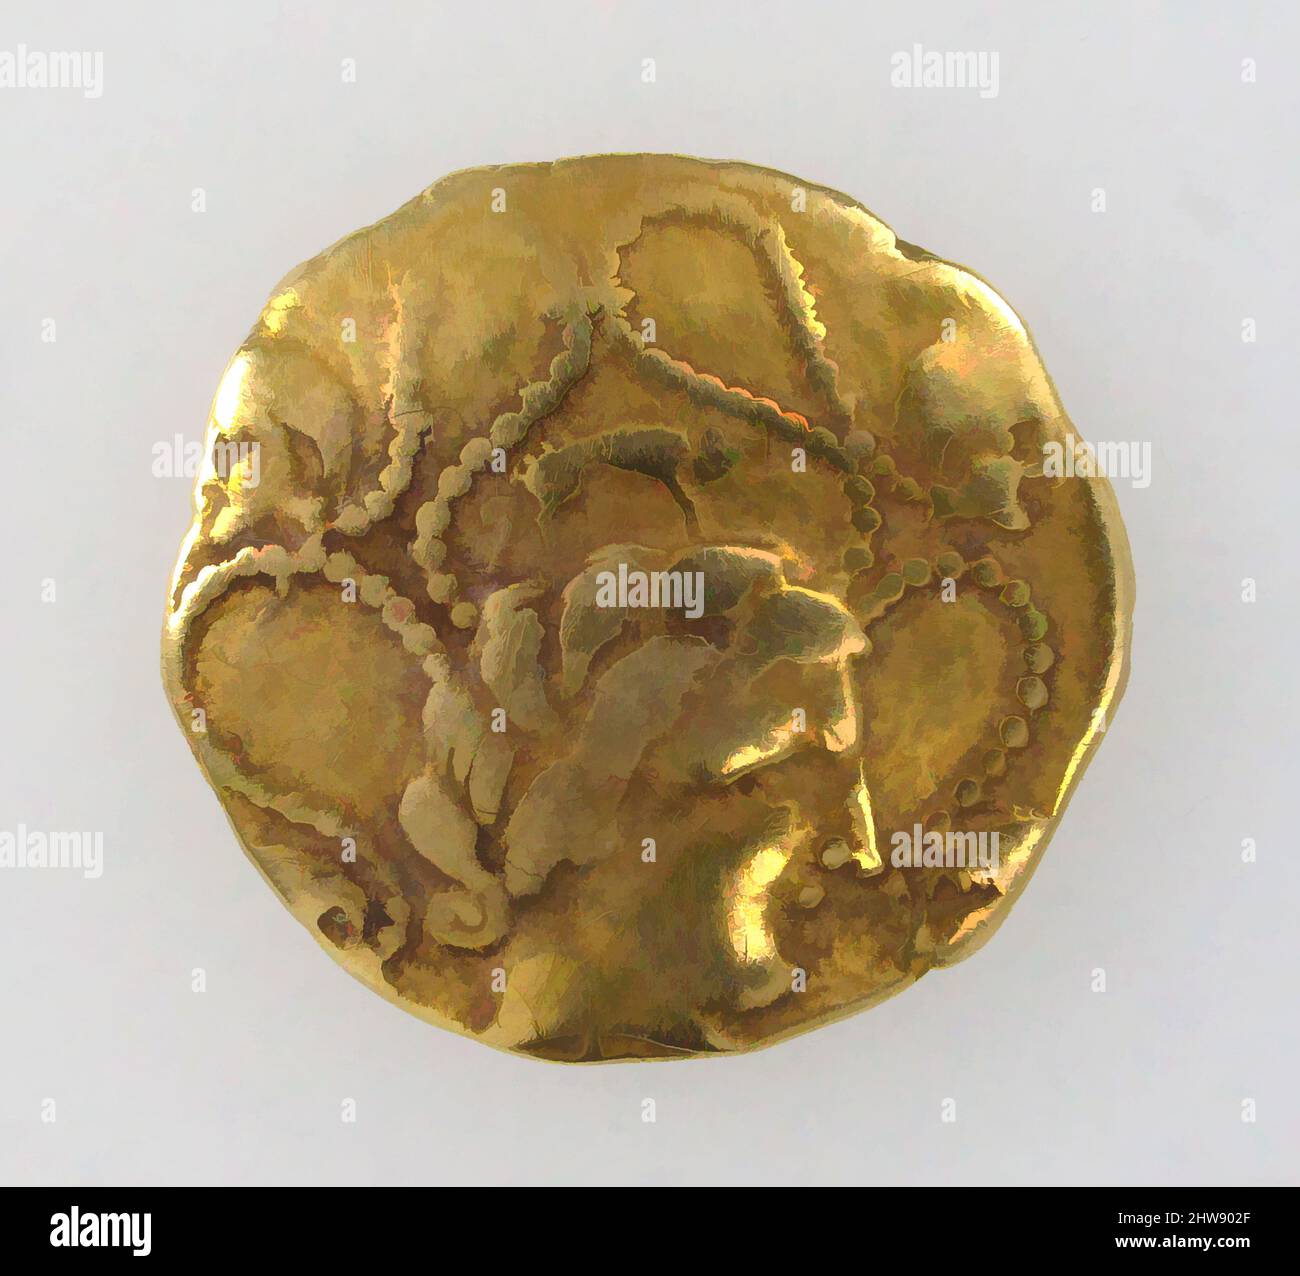 Kunst inspiriert von Goldmünze der Veneti oder Namneti, Mitte 2.. Jahrhundert v. Chr., keltisch, Gold, 3/4 × 13/16 × 1/8 in., 0,3oz. (1,9 × 2,1 × 0,3 cm, 7,9g), Münzen, die Kelten begannen wahrscheinlich im Jahre 200s v. chr. mit dem Prägen von Münzen, nachdem sie Gold- und Silberstücke von hellenistischen Königen erhalten hatten, die Classic Works, die von Artotop mit einem Schuss Moderne modernisiert wurden, anstellten. Formen, Farbe und Wert, auffällige visuelle Wirkung auf Kunst. Emotionen durch Freiheit von Kunstwerken auf zeitgemäße Weise. Eine zeitlose Botschaft, die eine wild kreative neue Richtung verfolgt. Künstler, die sich dem digitalen Medium zuwenden und die Artotop NFT erschaffen Stockfoto